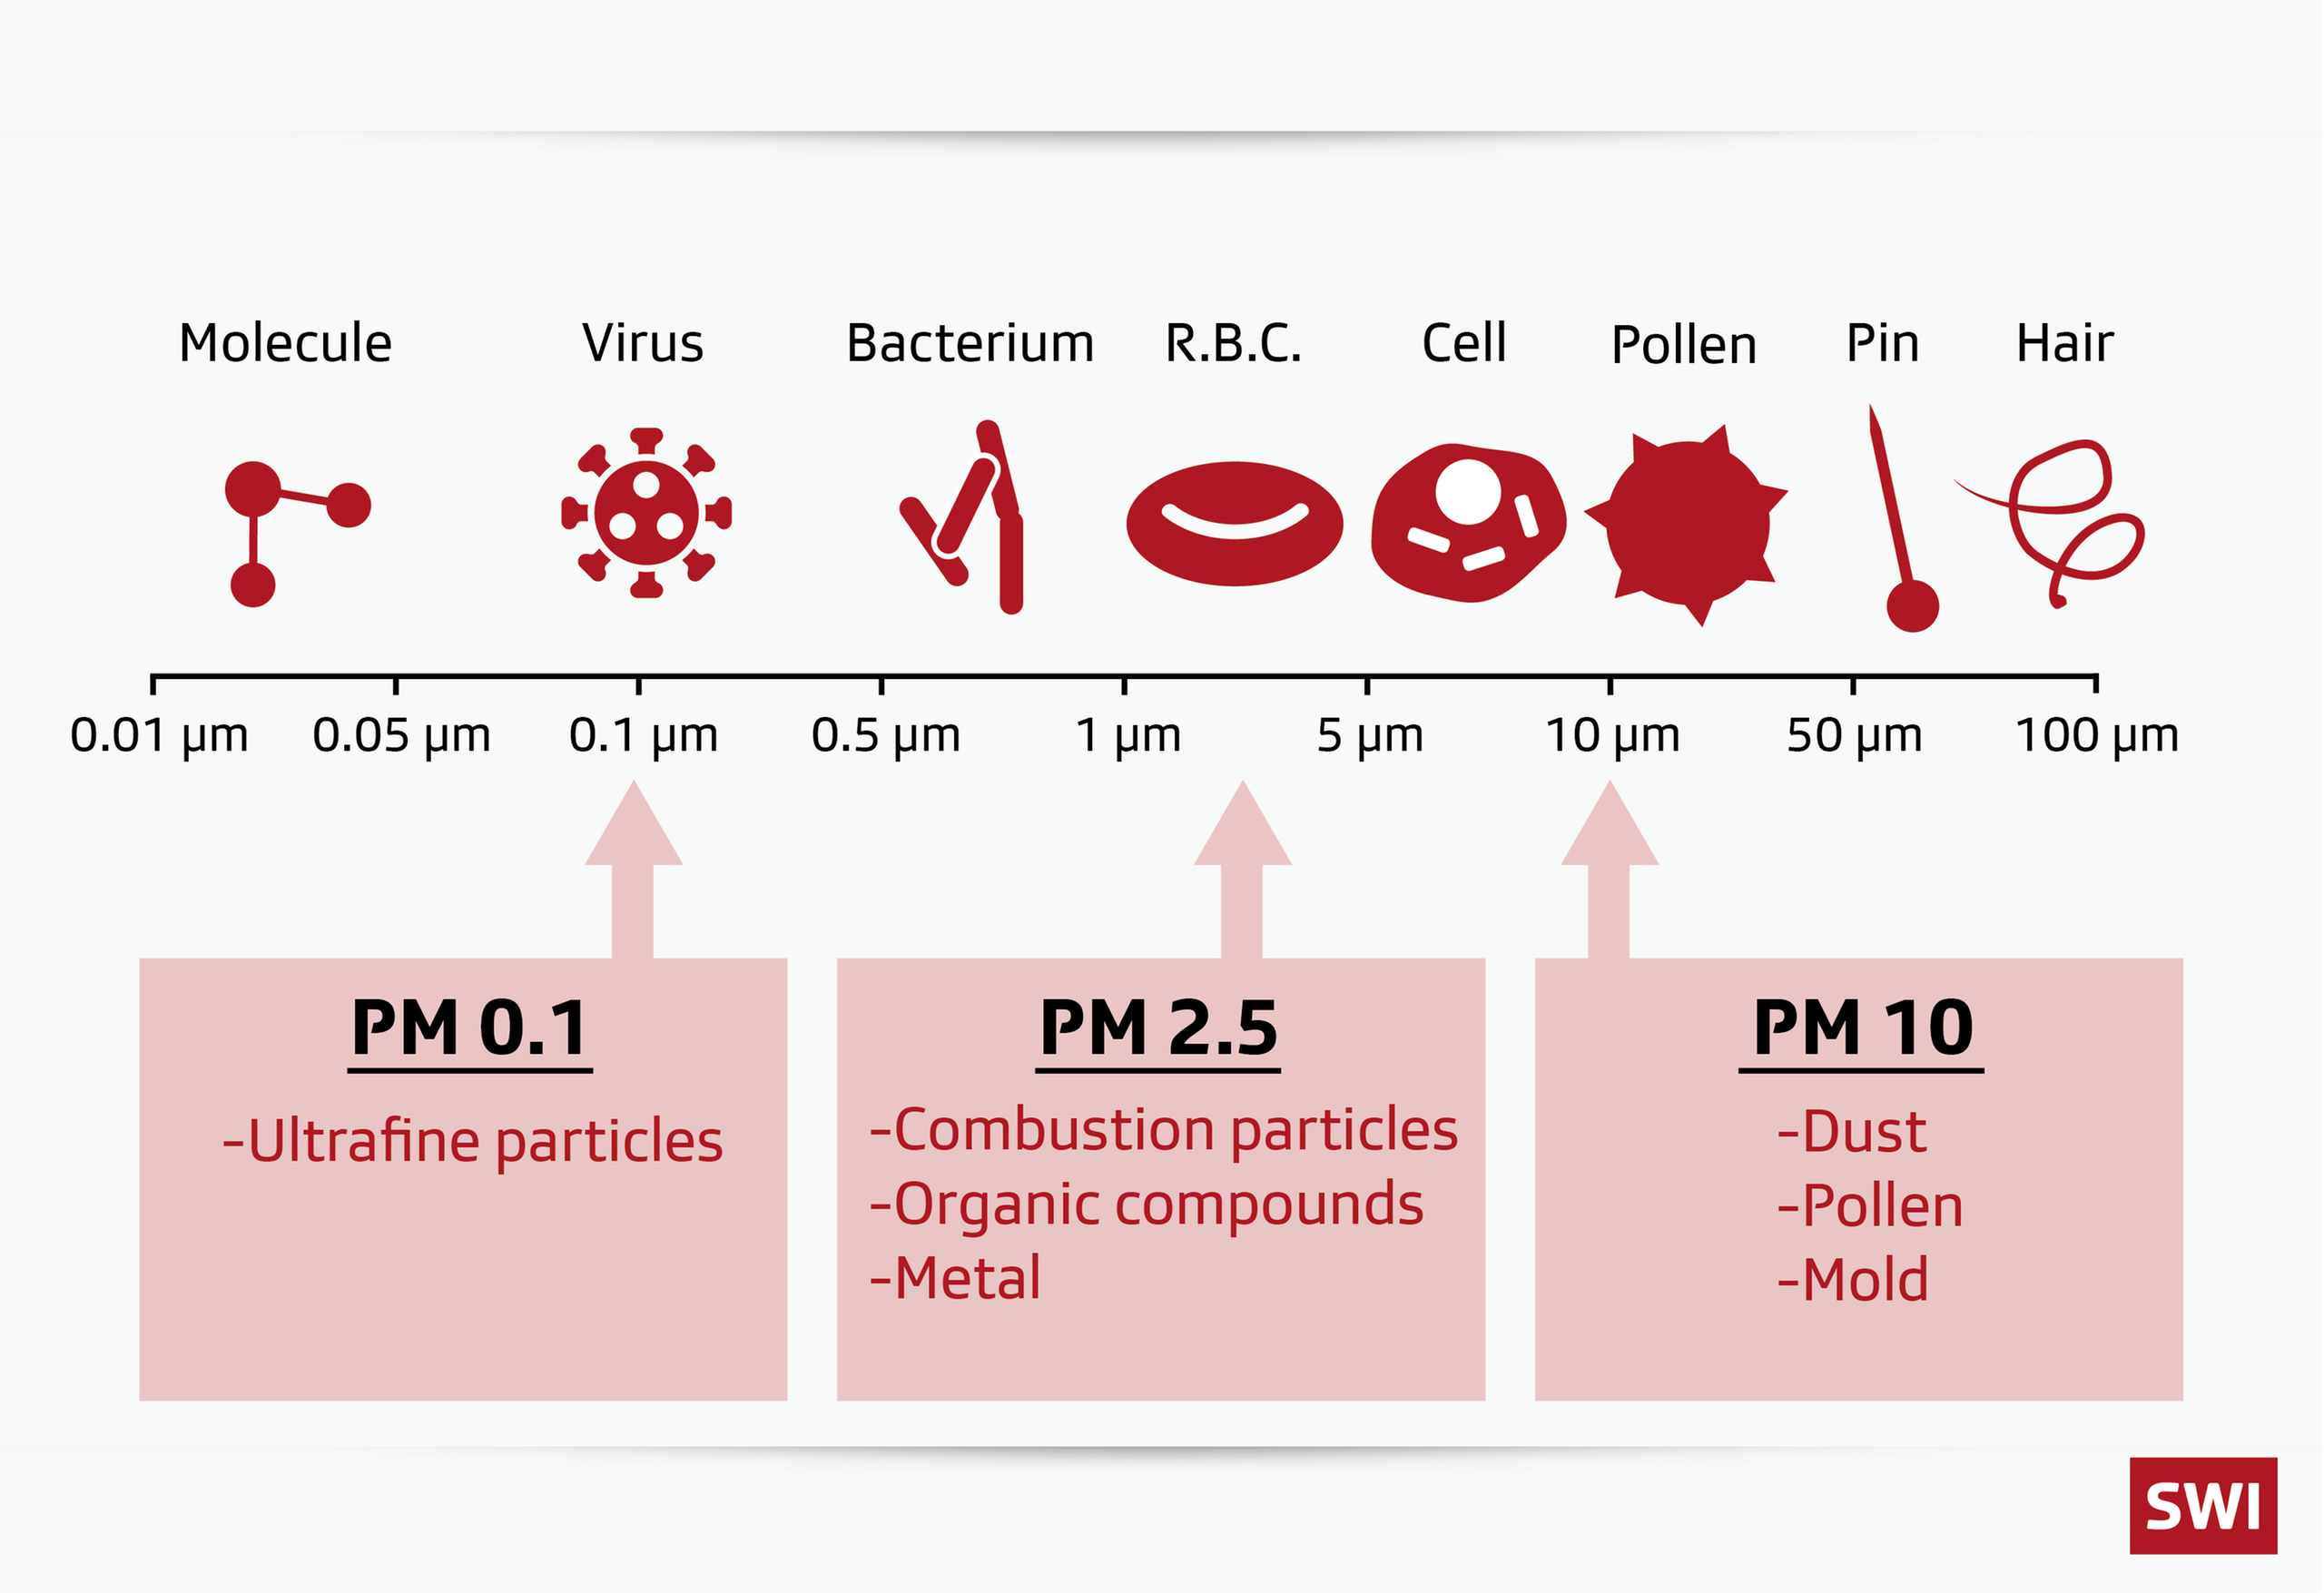 該圖顯示出空氣中不同粒徑的氣膠顆粒物與花粉、針尖、髮絲直徑的鮮明對比。 PM是英文Particulate Matter顆粒物的簡寫；PM後邊的數值則代表著顆粒物直徑大小，一般用微米表示，數值越大表示顆粒物越大。